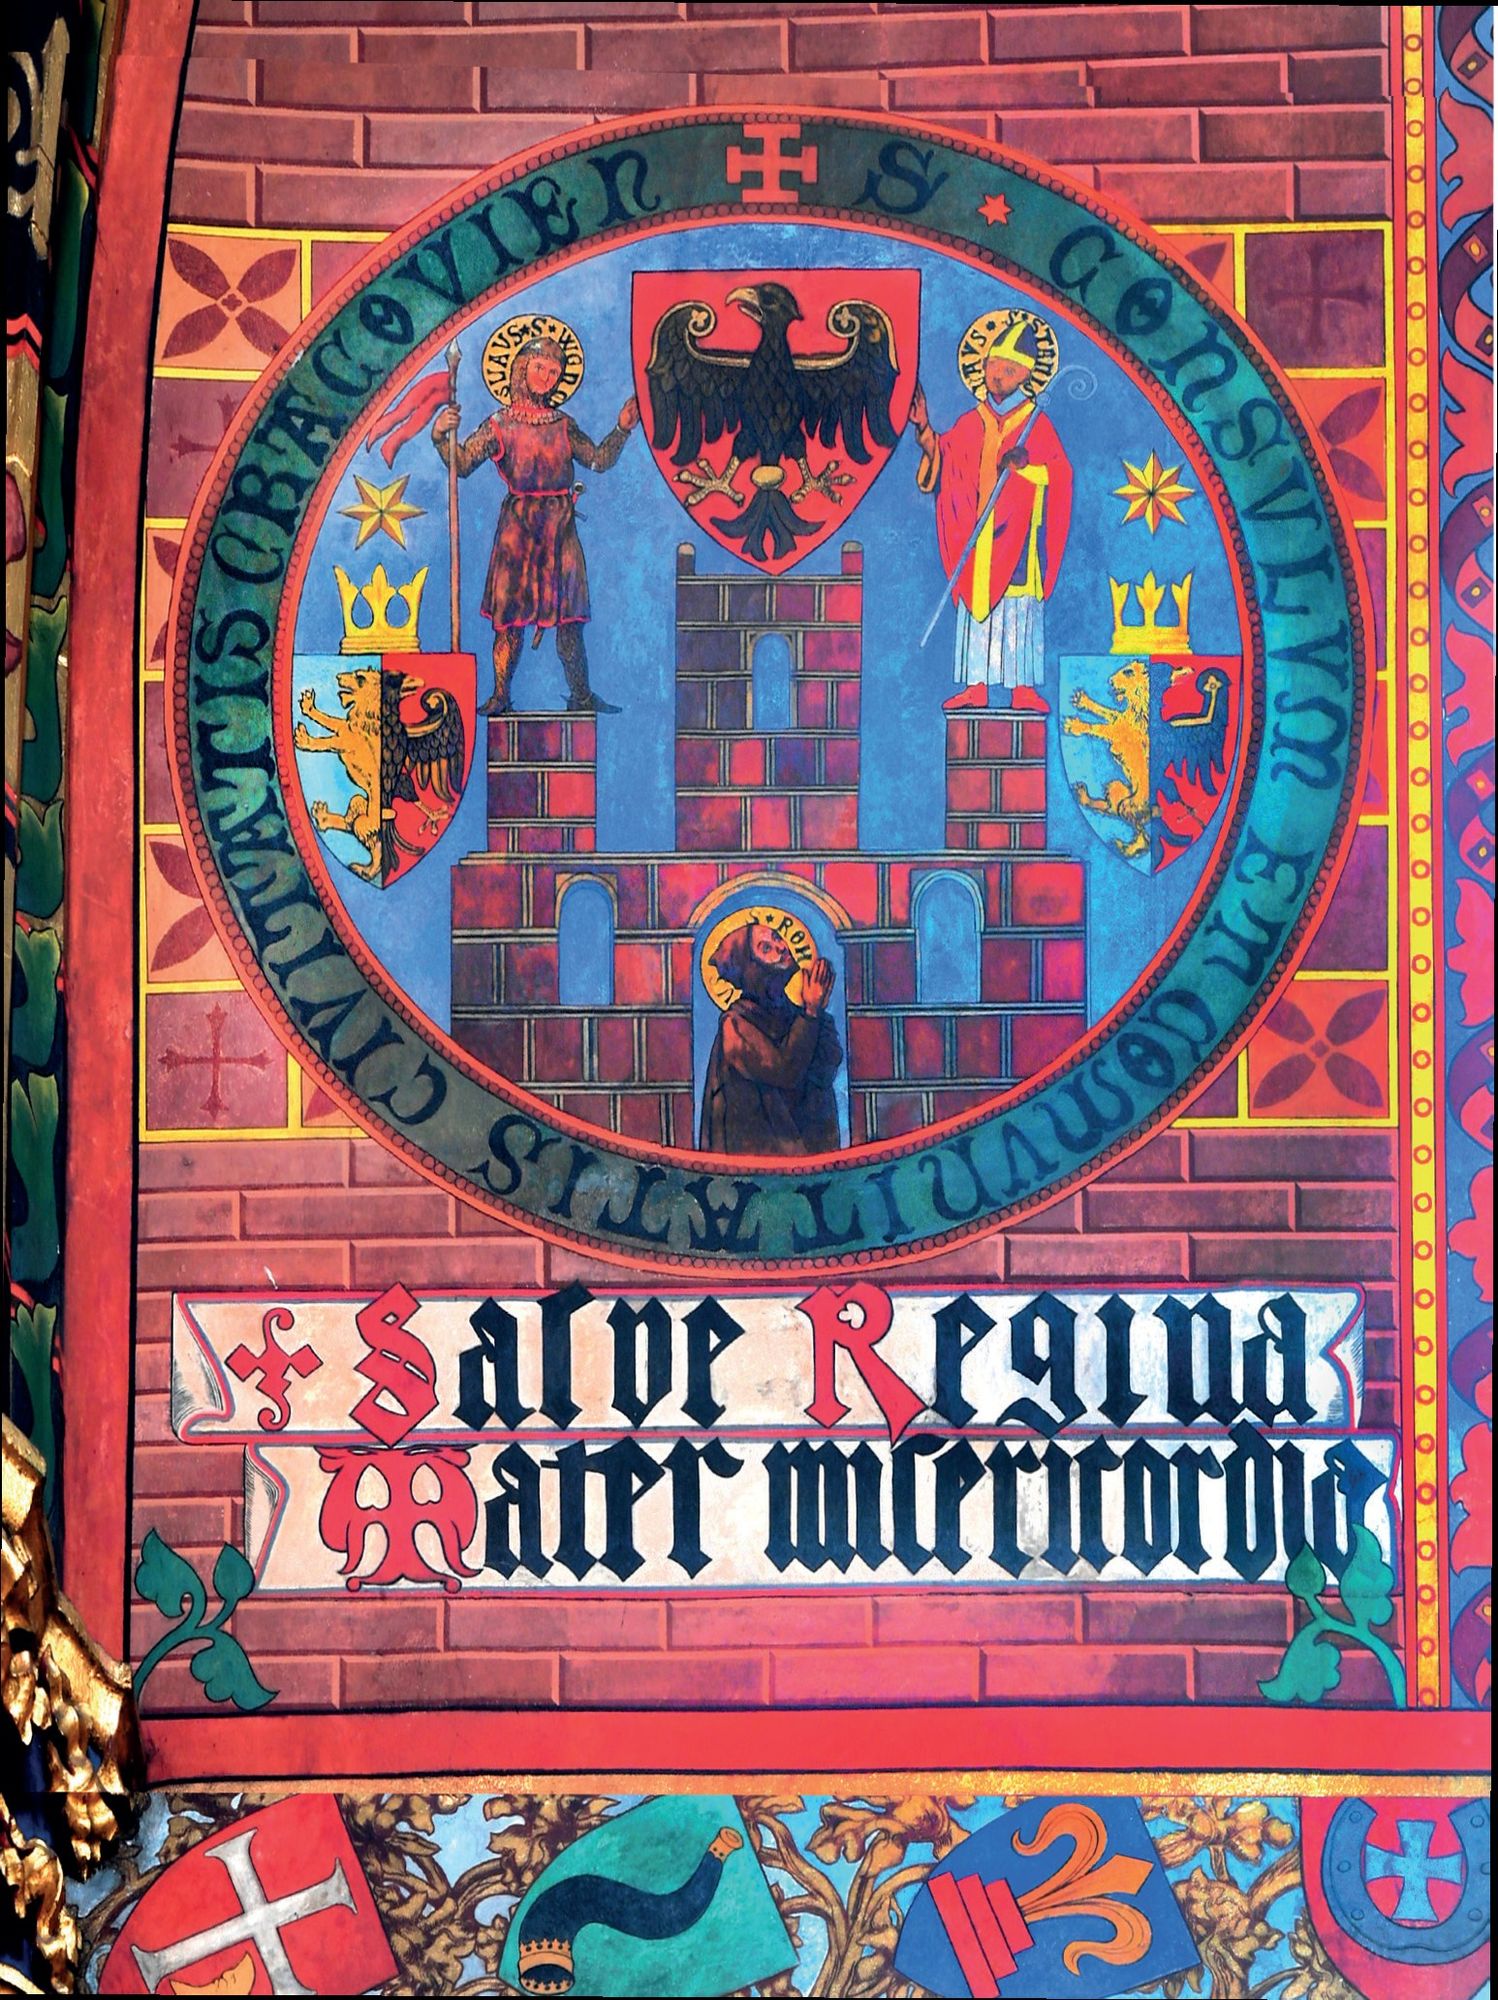 (594) Rok 1891 – polichromia wyobrażająca najstarszą pieczęć miasta i rady miejskiej (właśnie ta pieczęć stała się prawzorem herbu Krakowa);
wykonana przez Stanisława Wyspiańskiego pod kierunkiem Jana Matejki (udostępnione przez Bazylikę Mariacką)